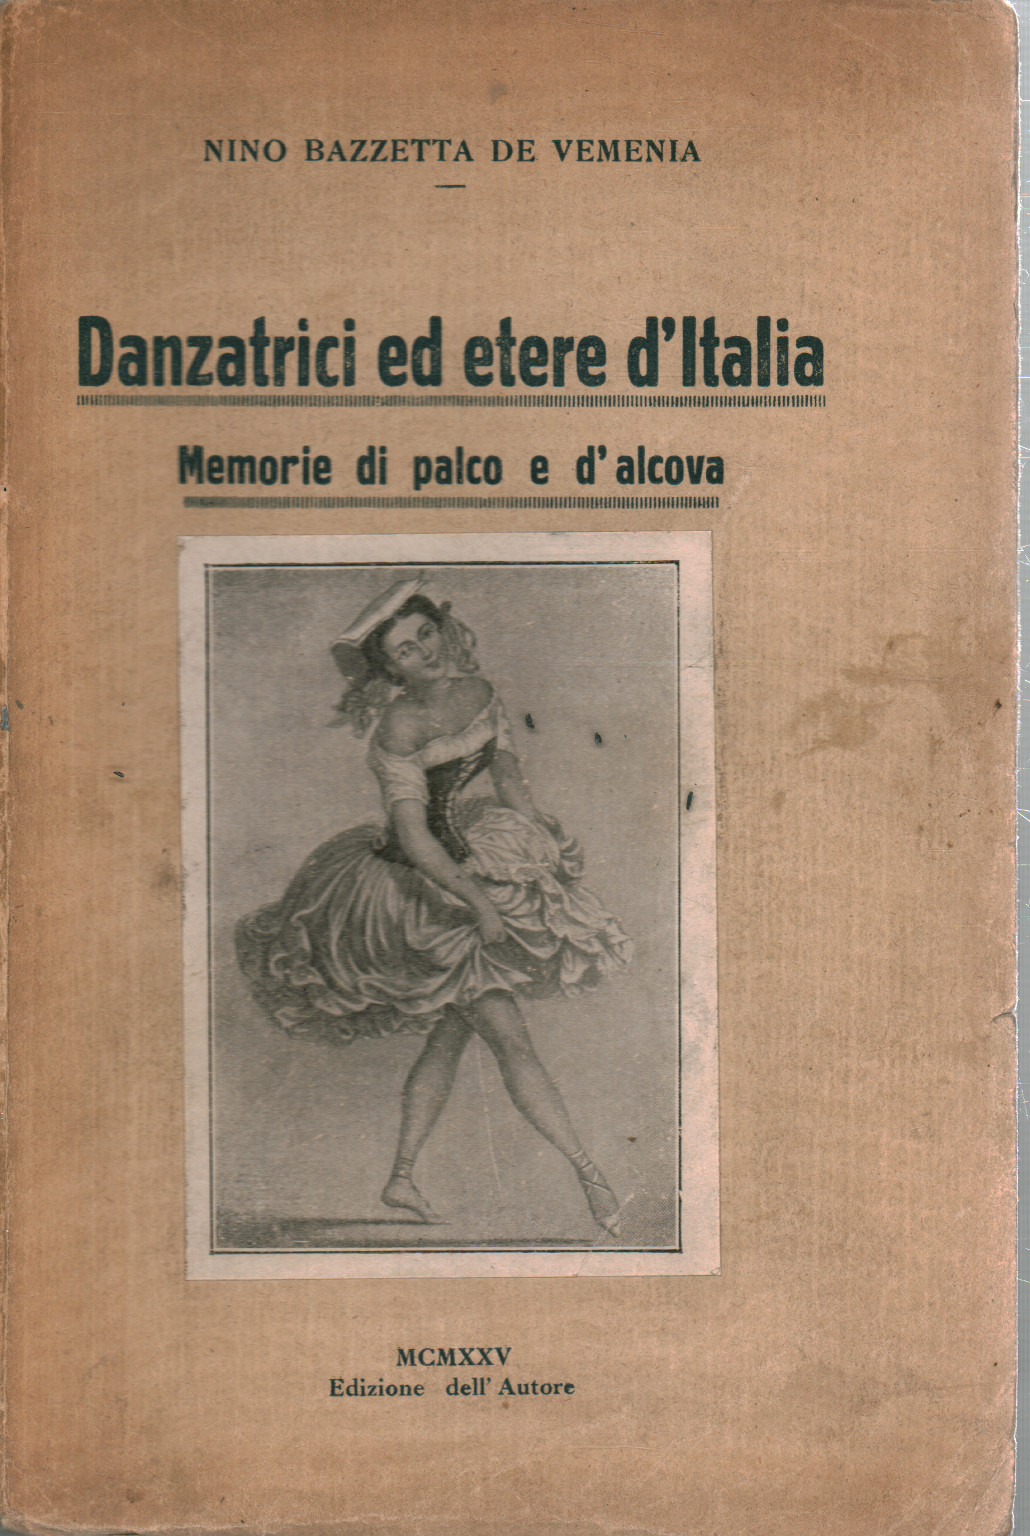 Danzatrici ed etere d Italia, s.a.